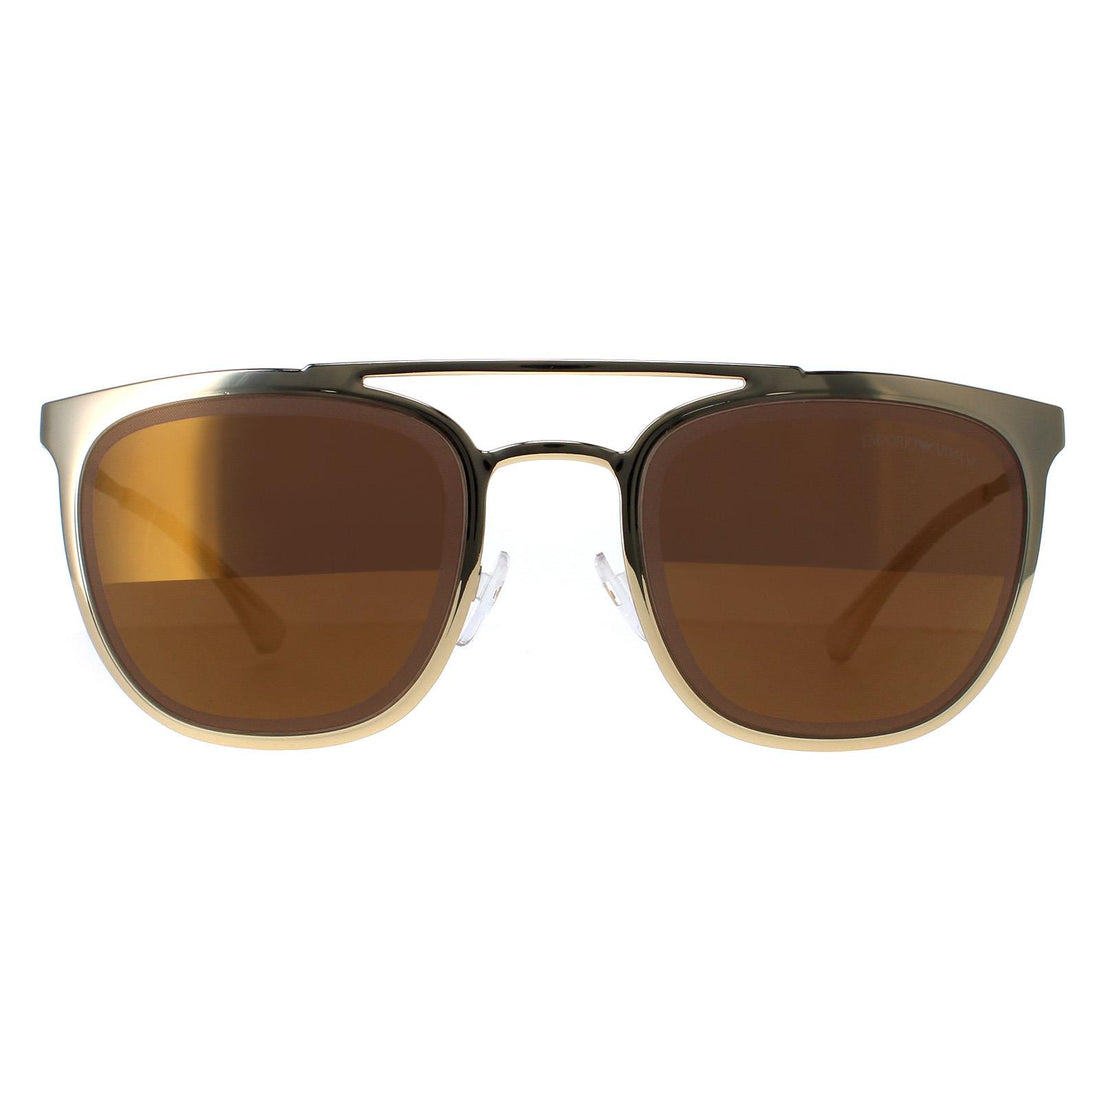 Emporio Armani EA2069 Sunglasses Pale Gold / Brown Mirror Bronze